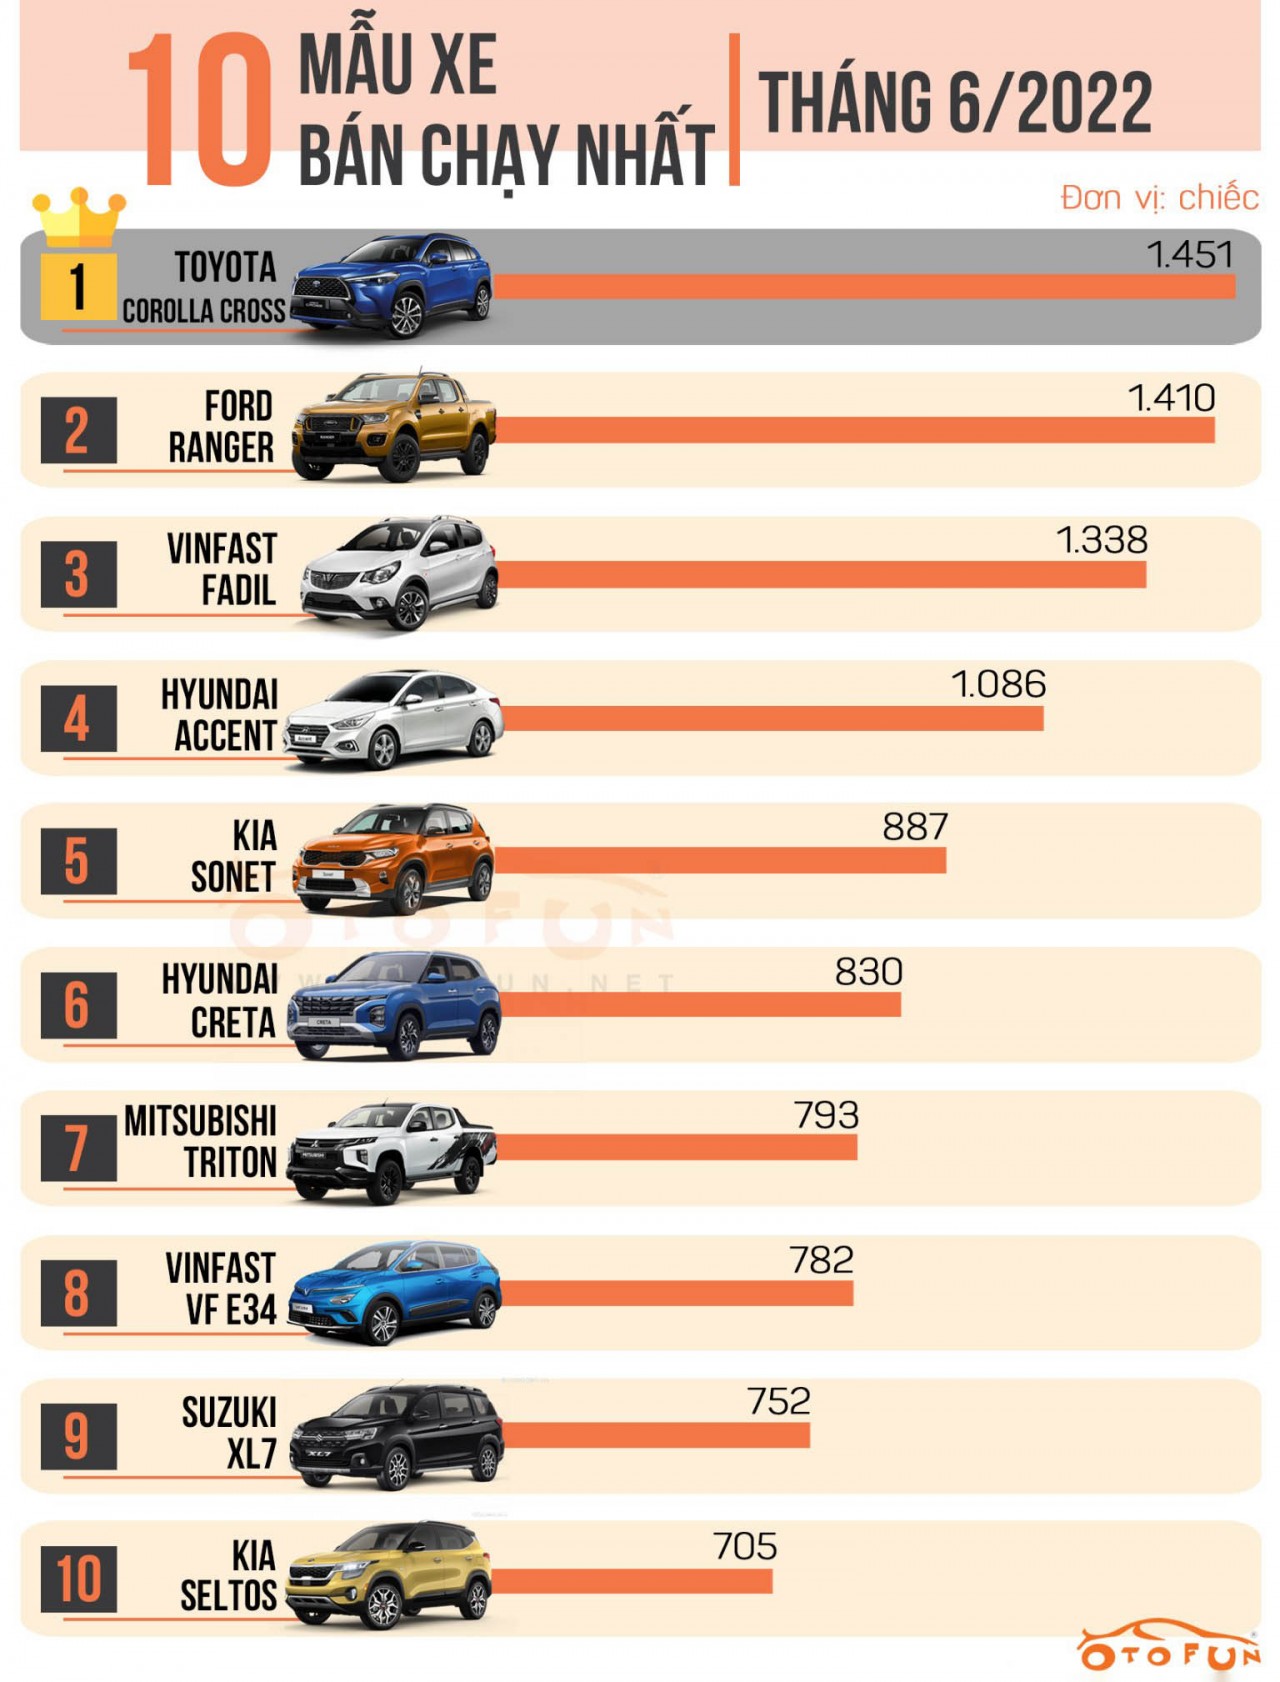 Top 10 xe ô tô bán chạy tháng 6/2022: